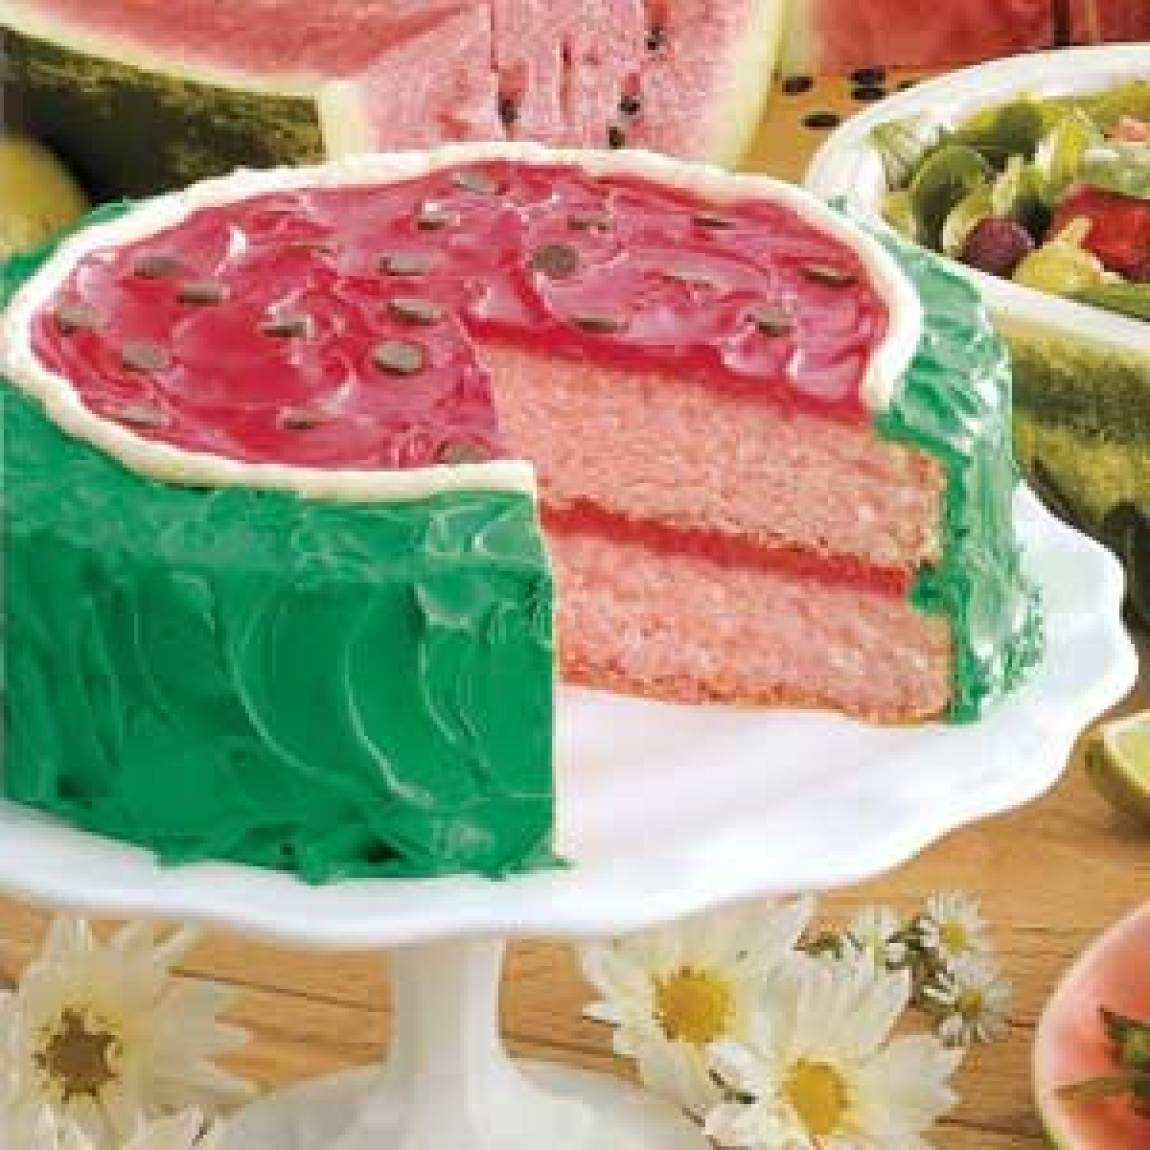 Watermelon Dessert Recipes
 Watermelon Cake Recipe